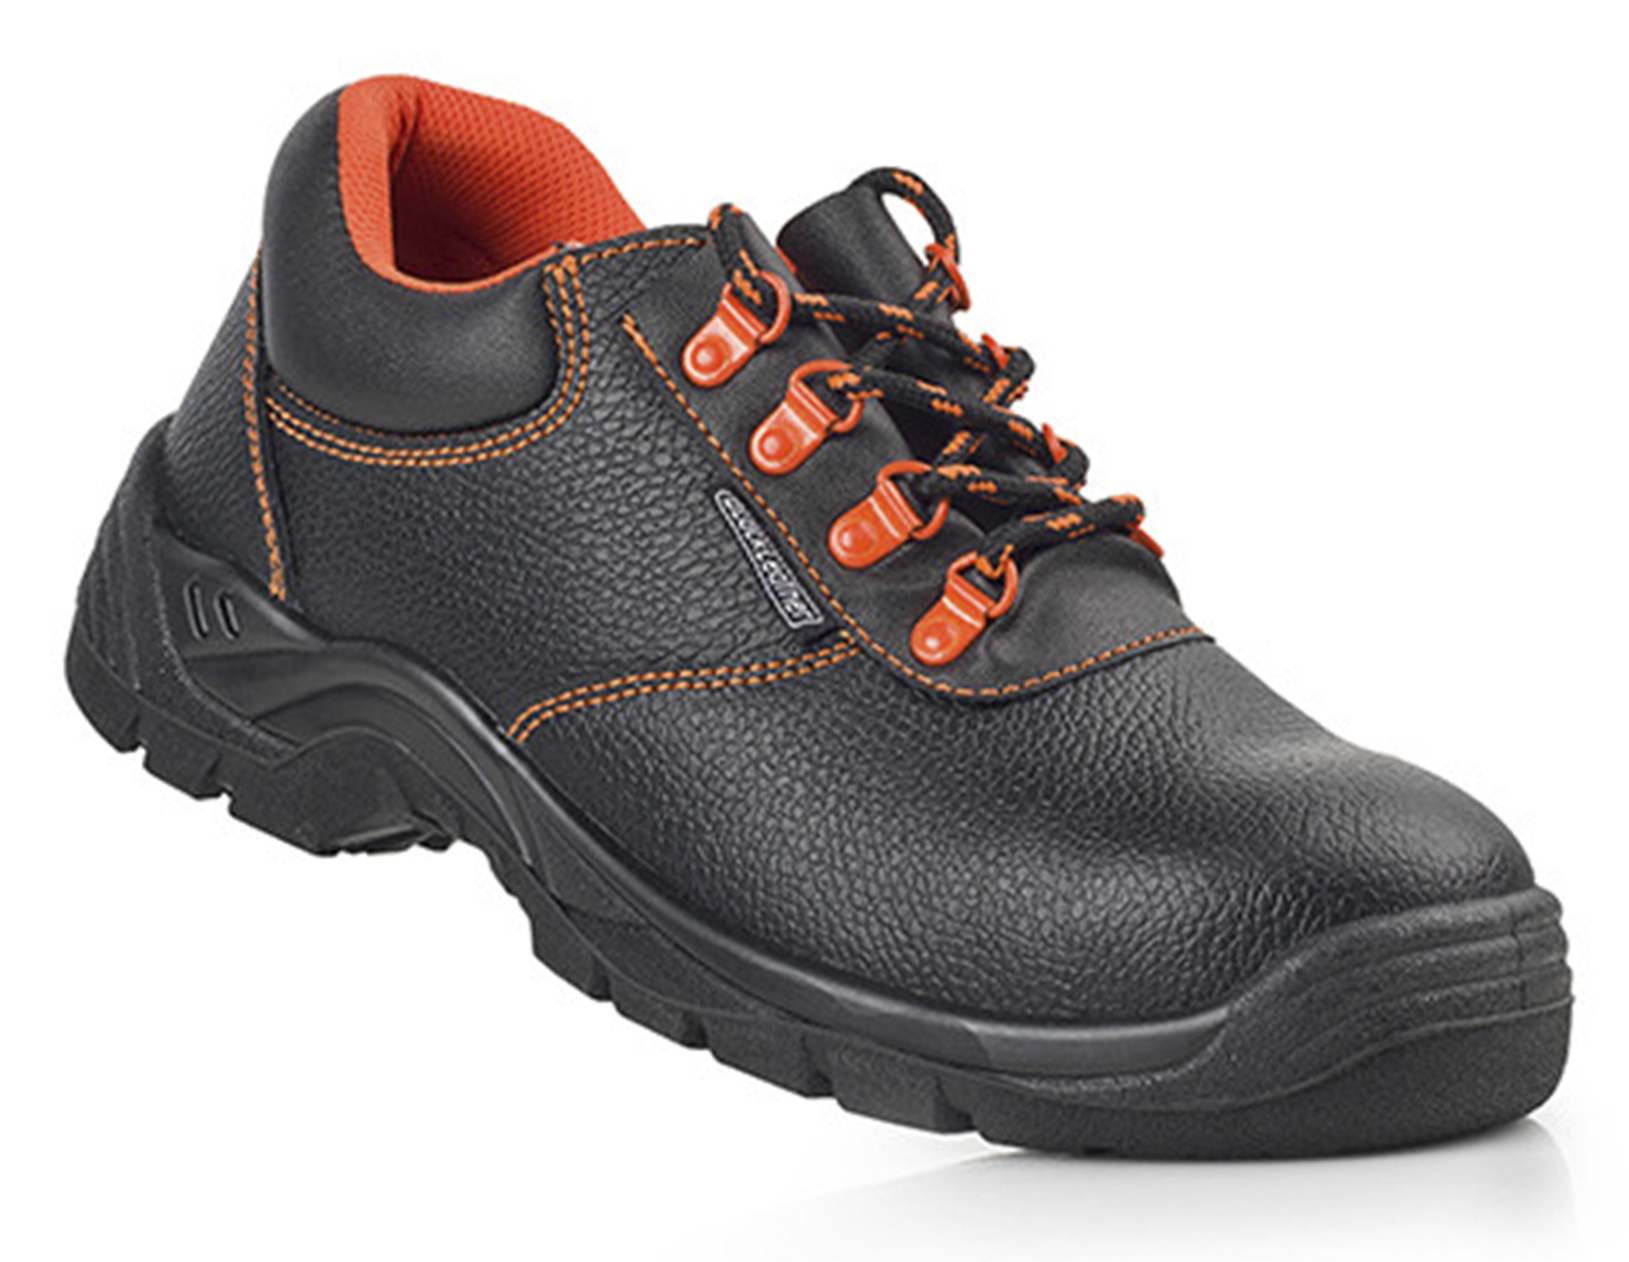 ZECO1 Chaussures de securite BlackLeather Zapato mod. ZECO1 (S3 SRC E A).